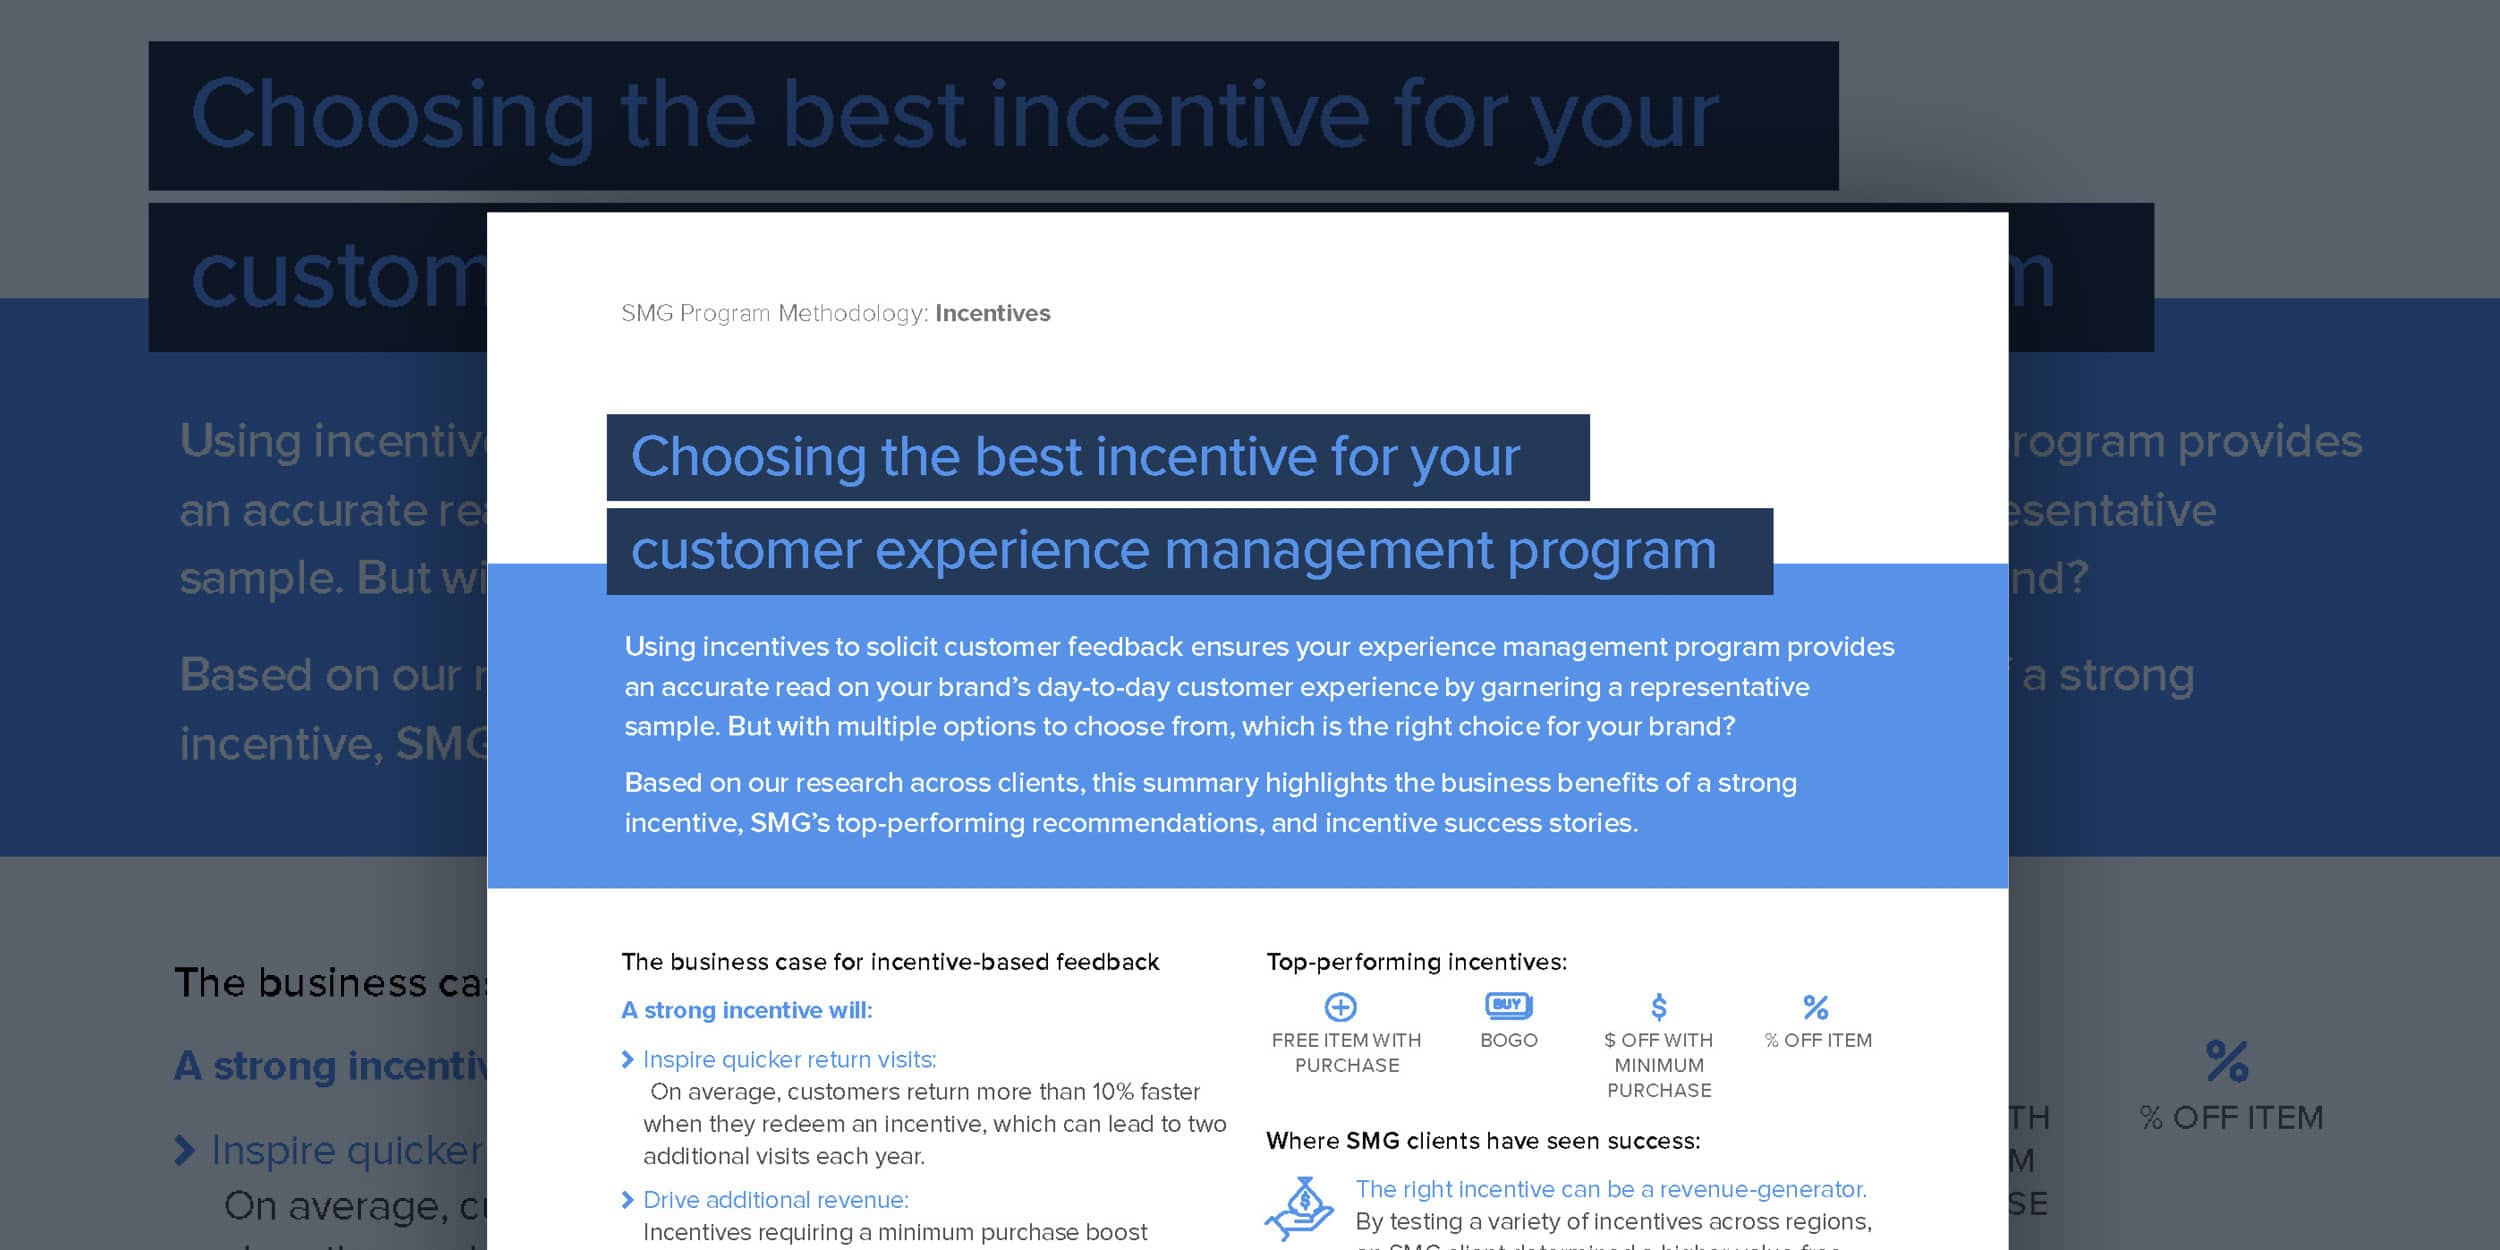 XM Program Guide: Incentives